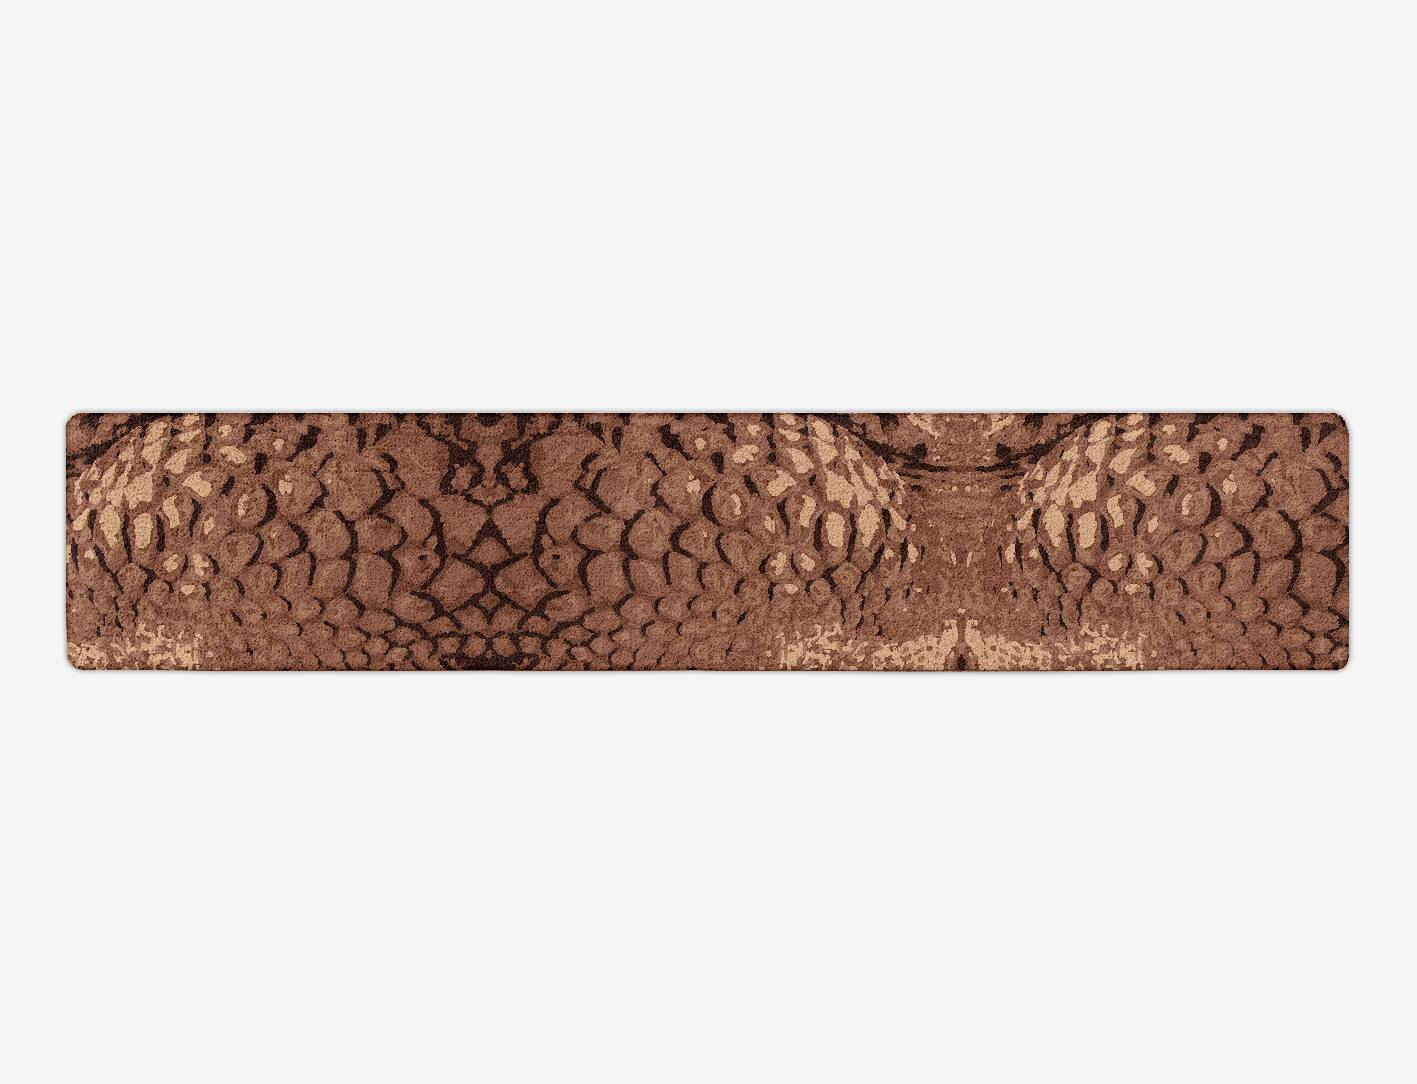 Croc Hide Animal Prints Runner Hand Tufted Pure Wool Custom Rug by Rug Artisan